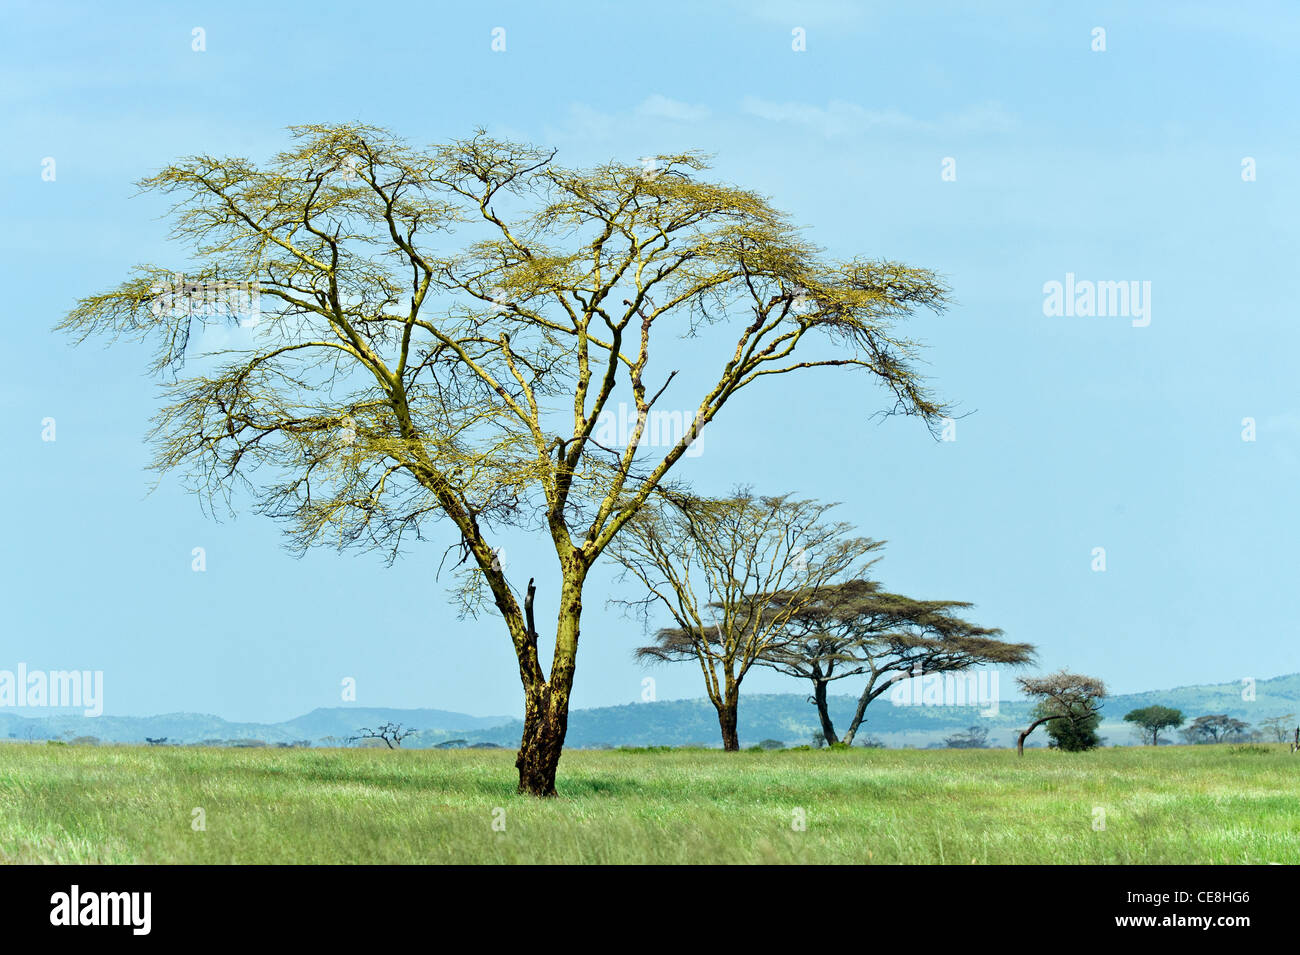 Serengeti landscape with Yellow barked Acacia trees (Acacia xanthophloea), Tanzania Stock Photo